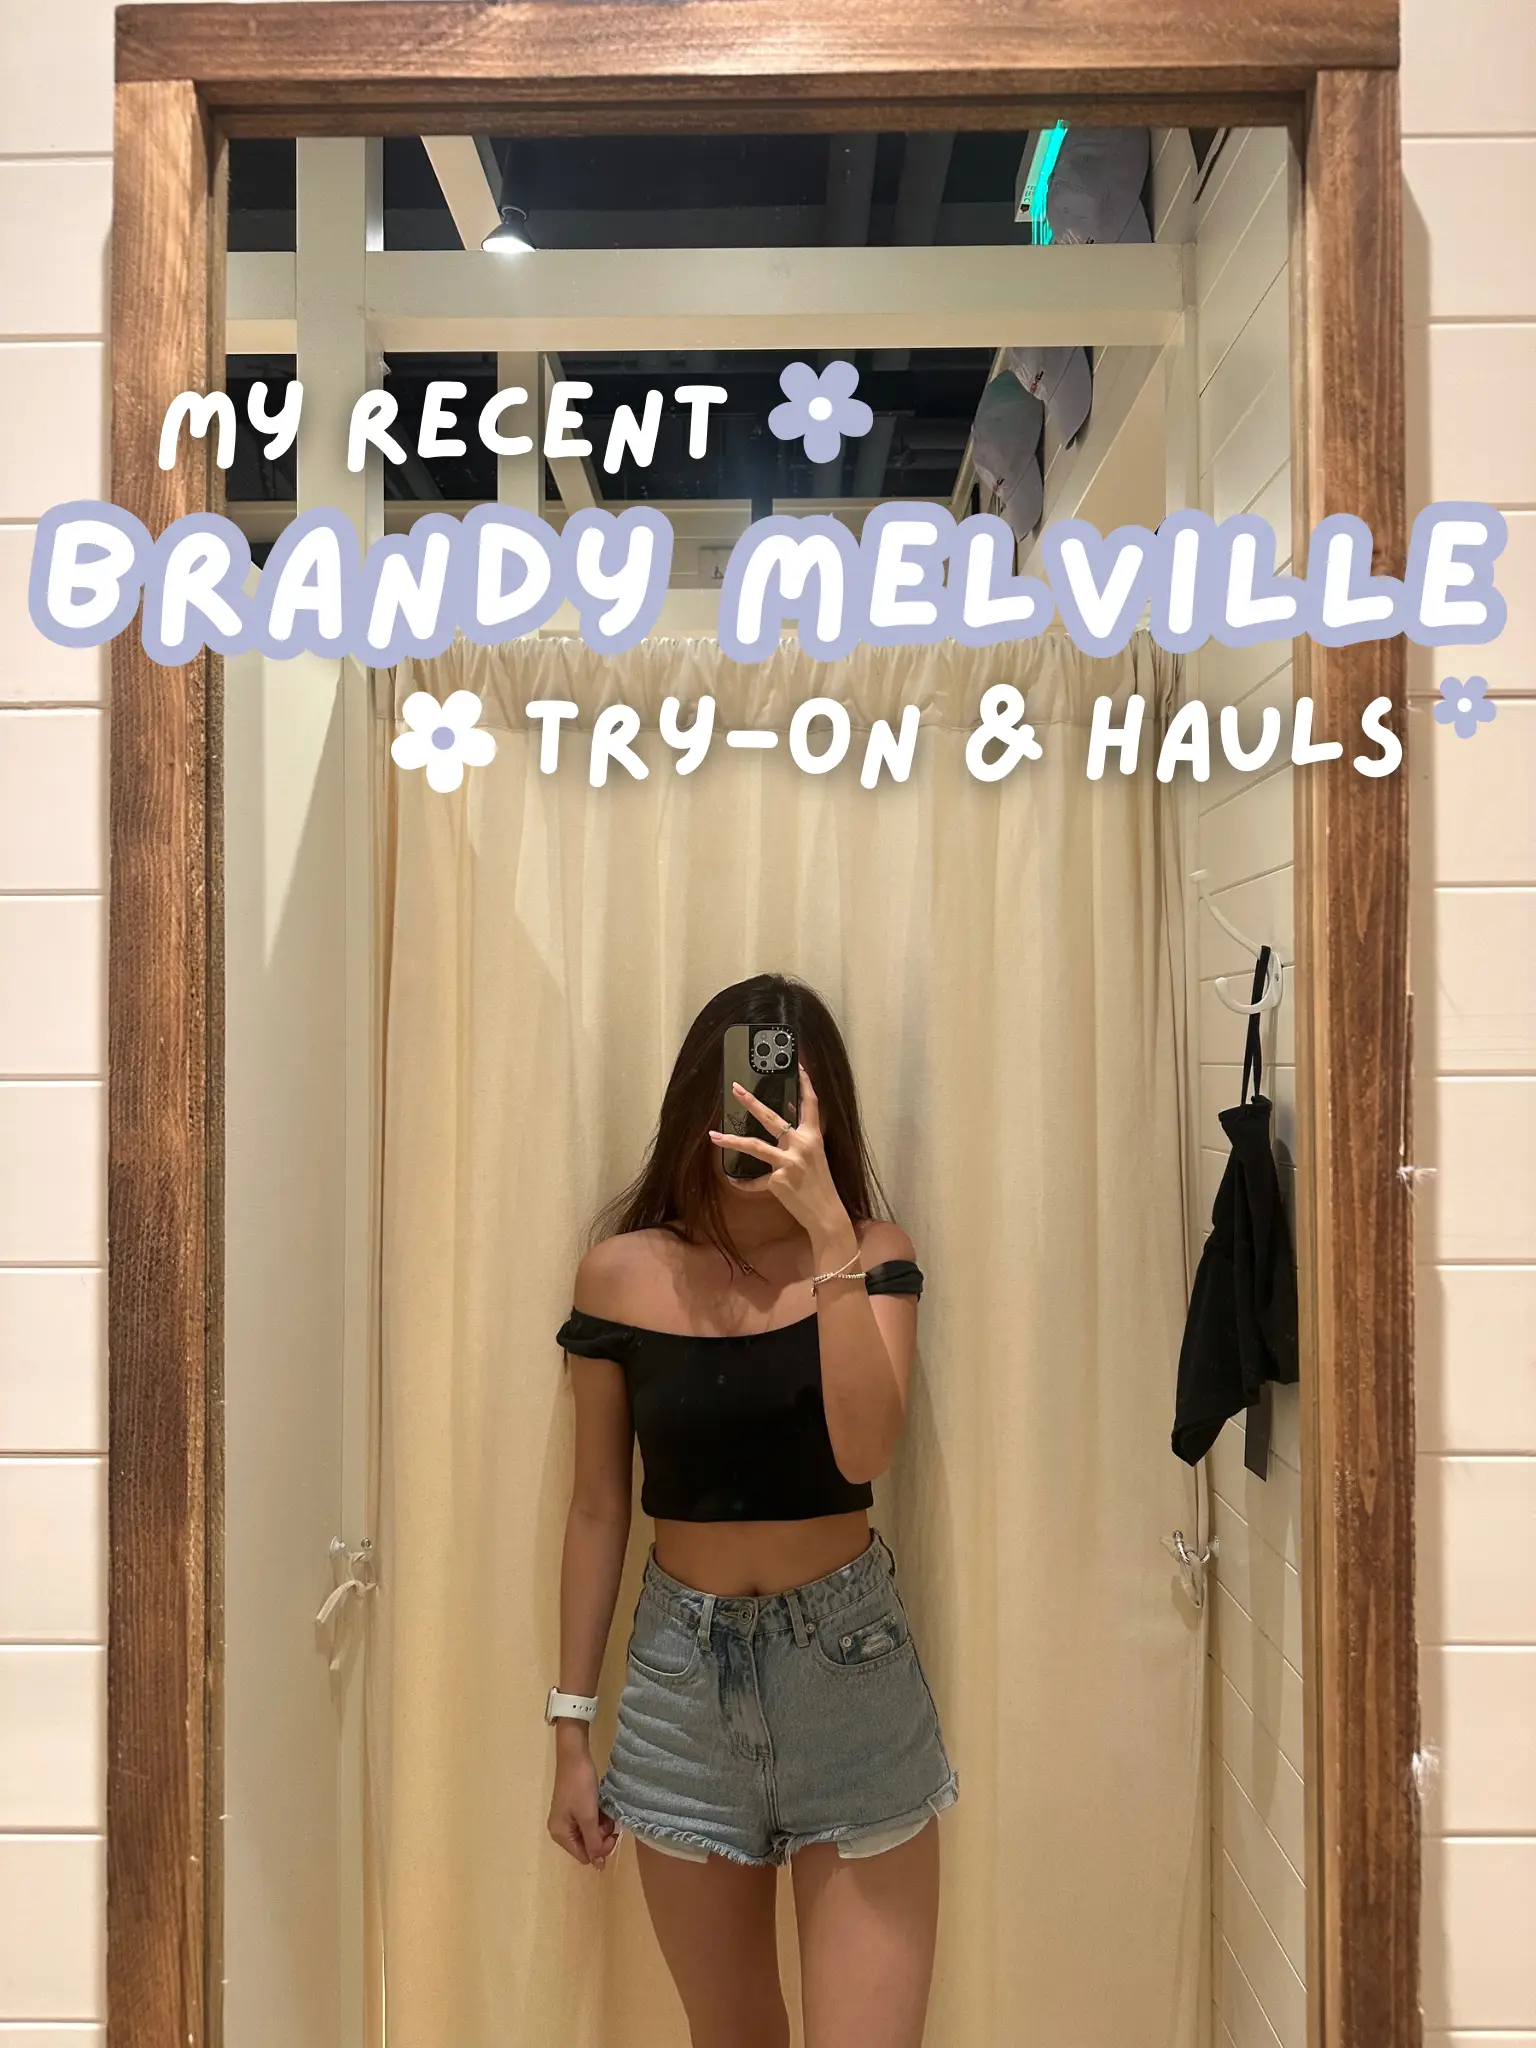 Brandy Melville Denim Shorts - Gem